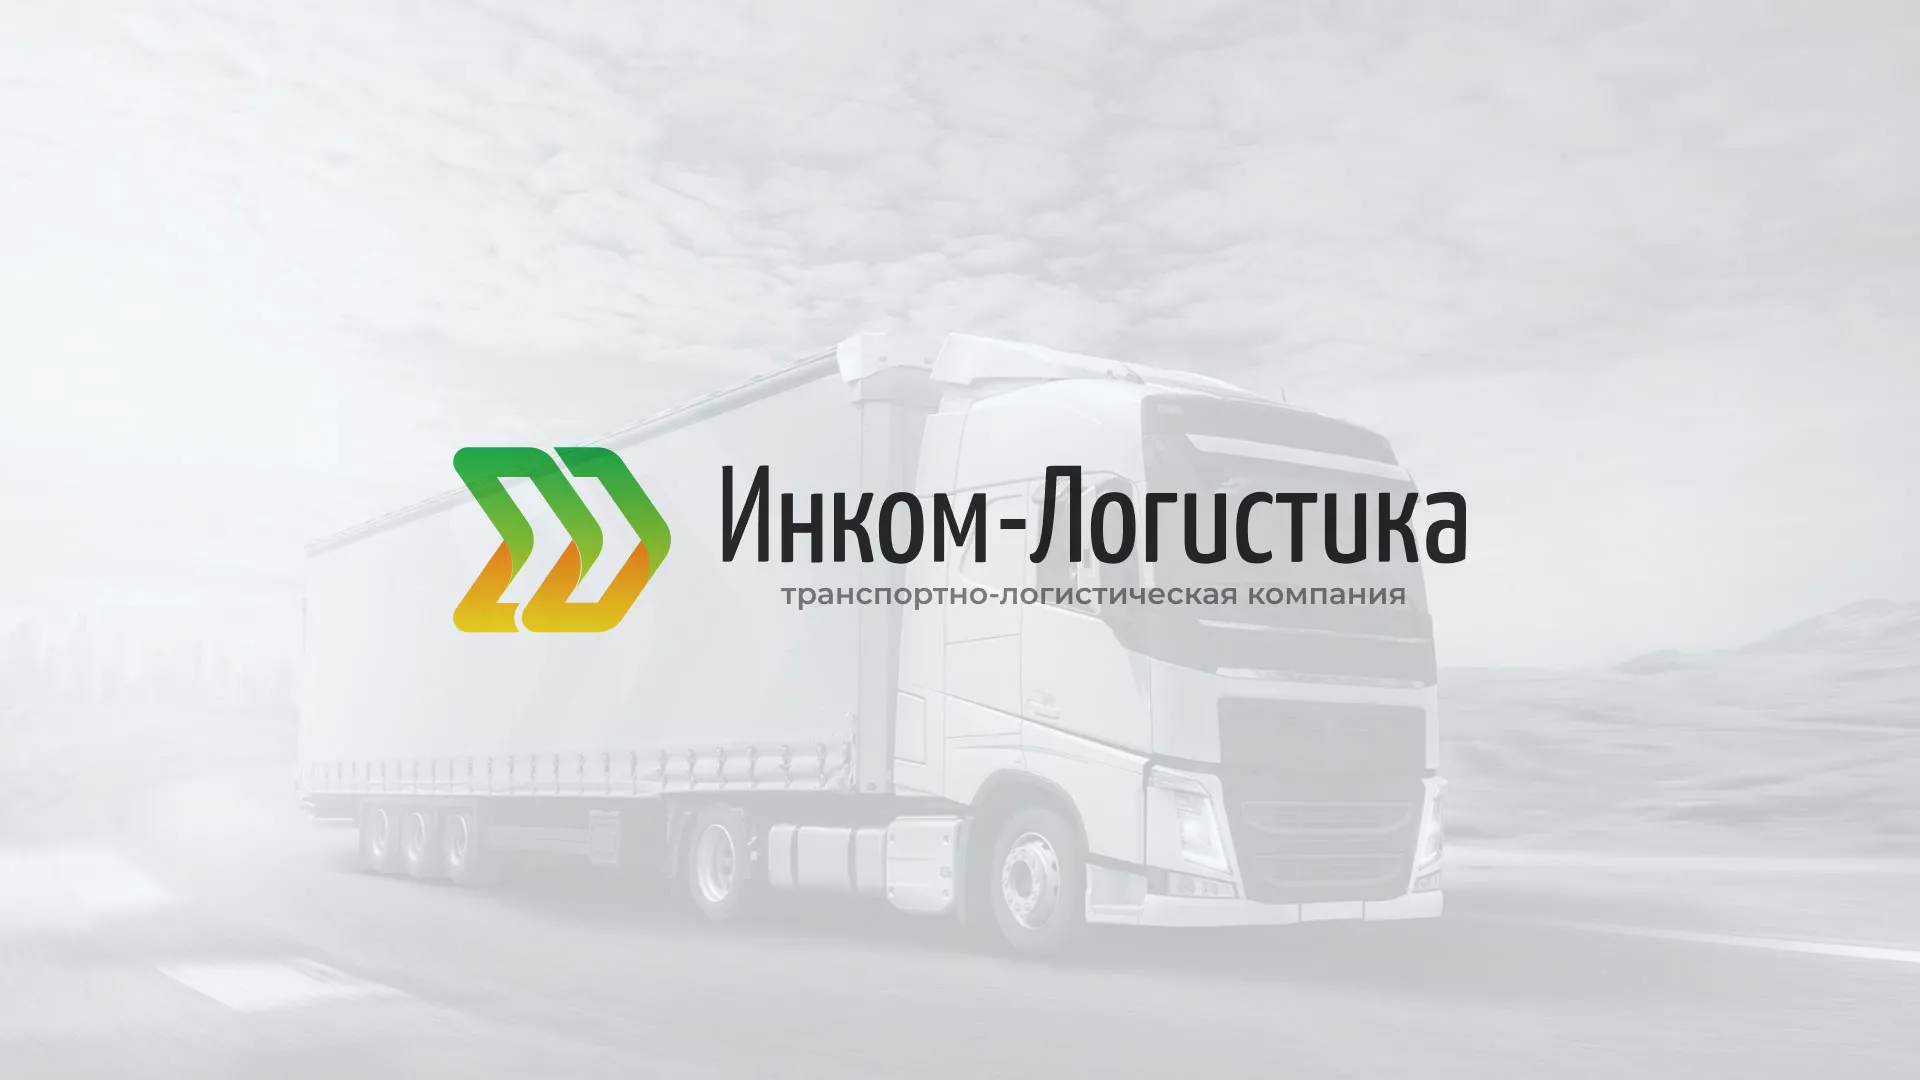 Разработка логотипа и сайта компании «Инком-Логистика» в Острогожске